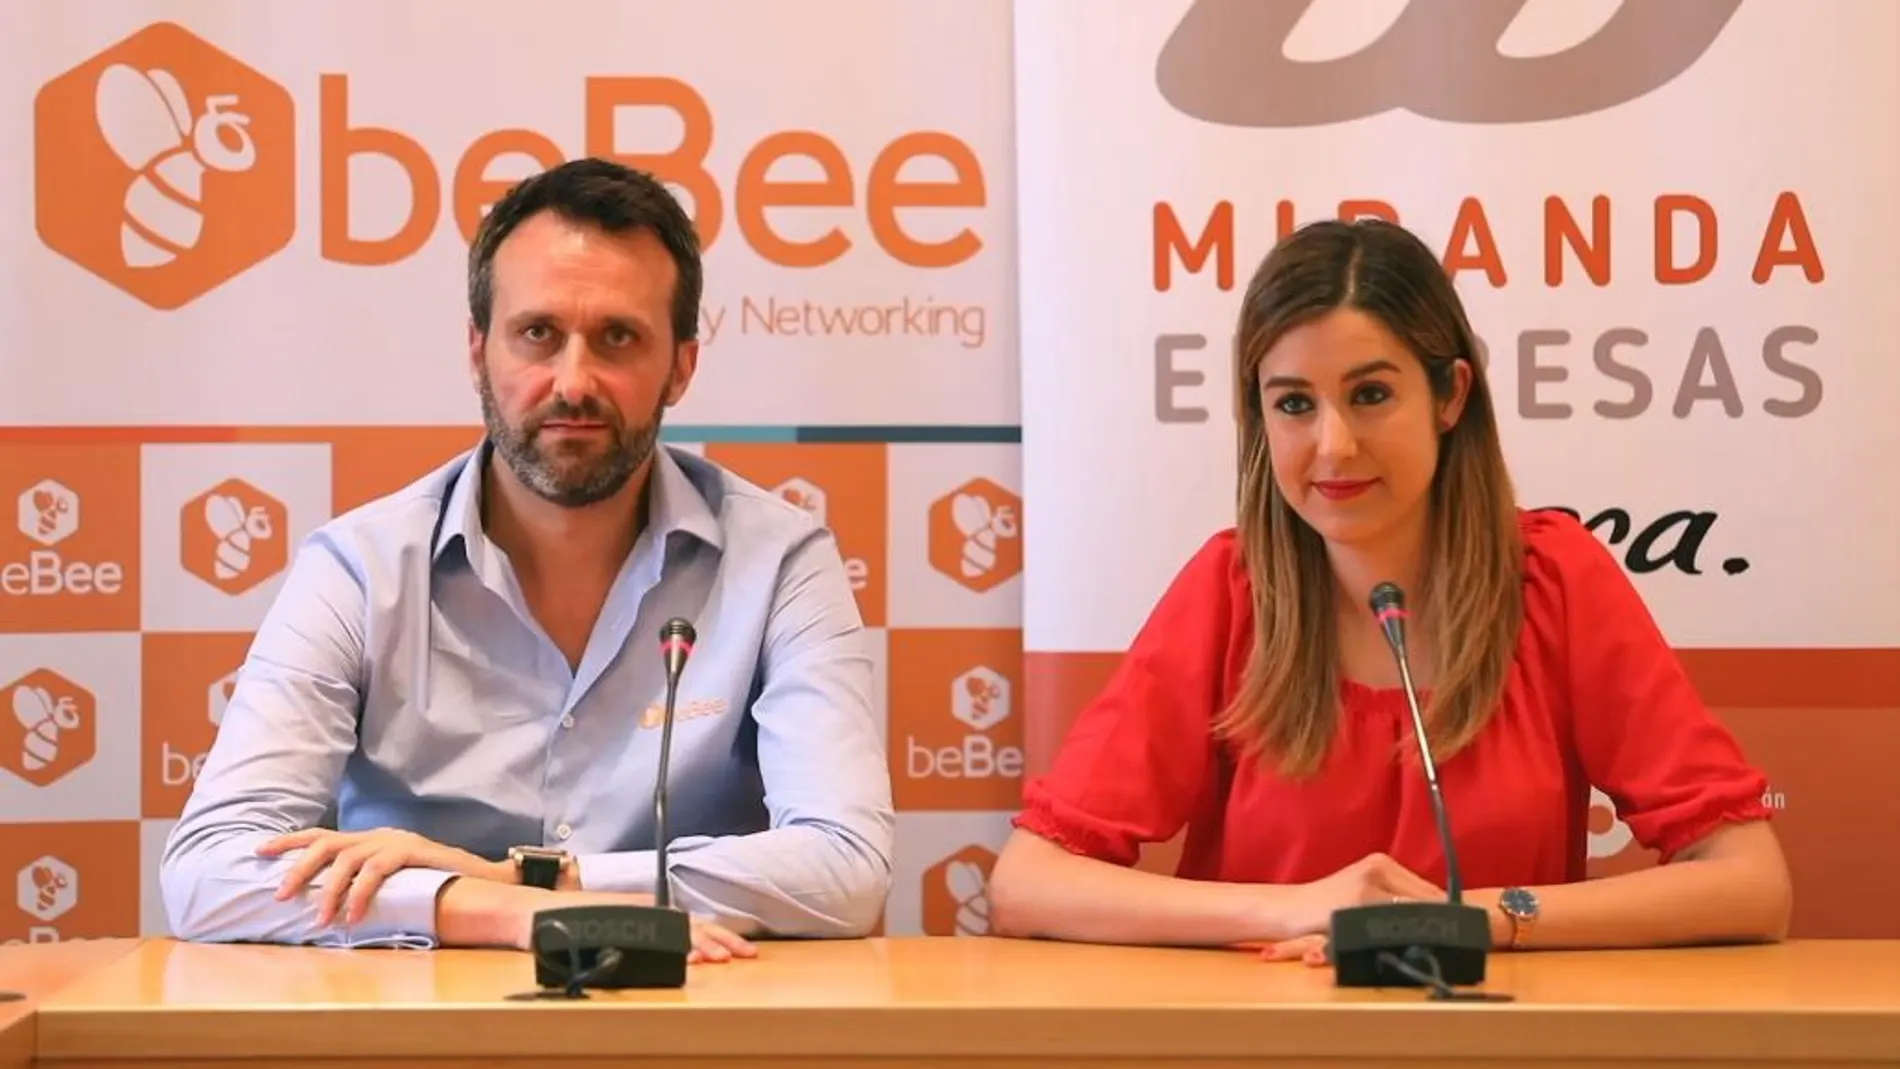 La Alcaldesa de Miranda de Ebro, Aitana Hernando y Javier Cámara, CEO de beBee